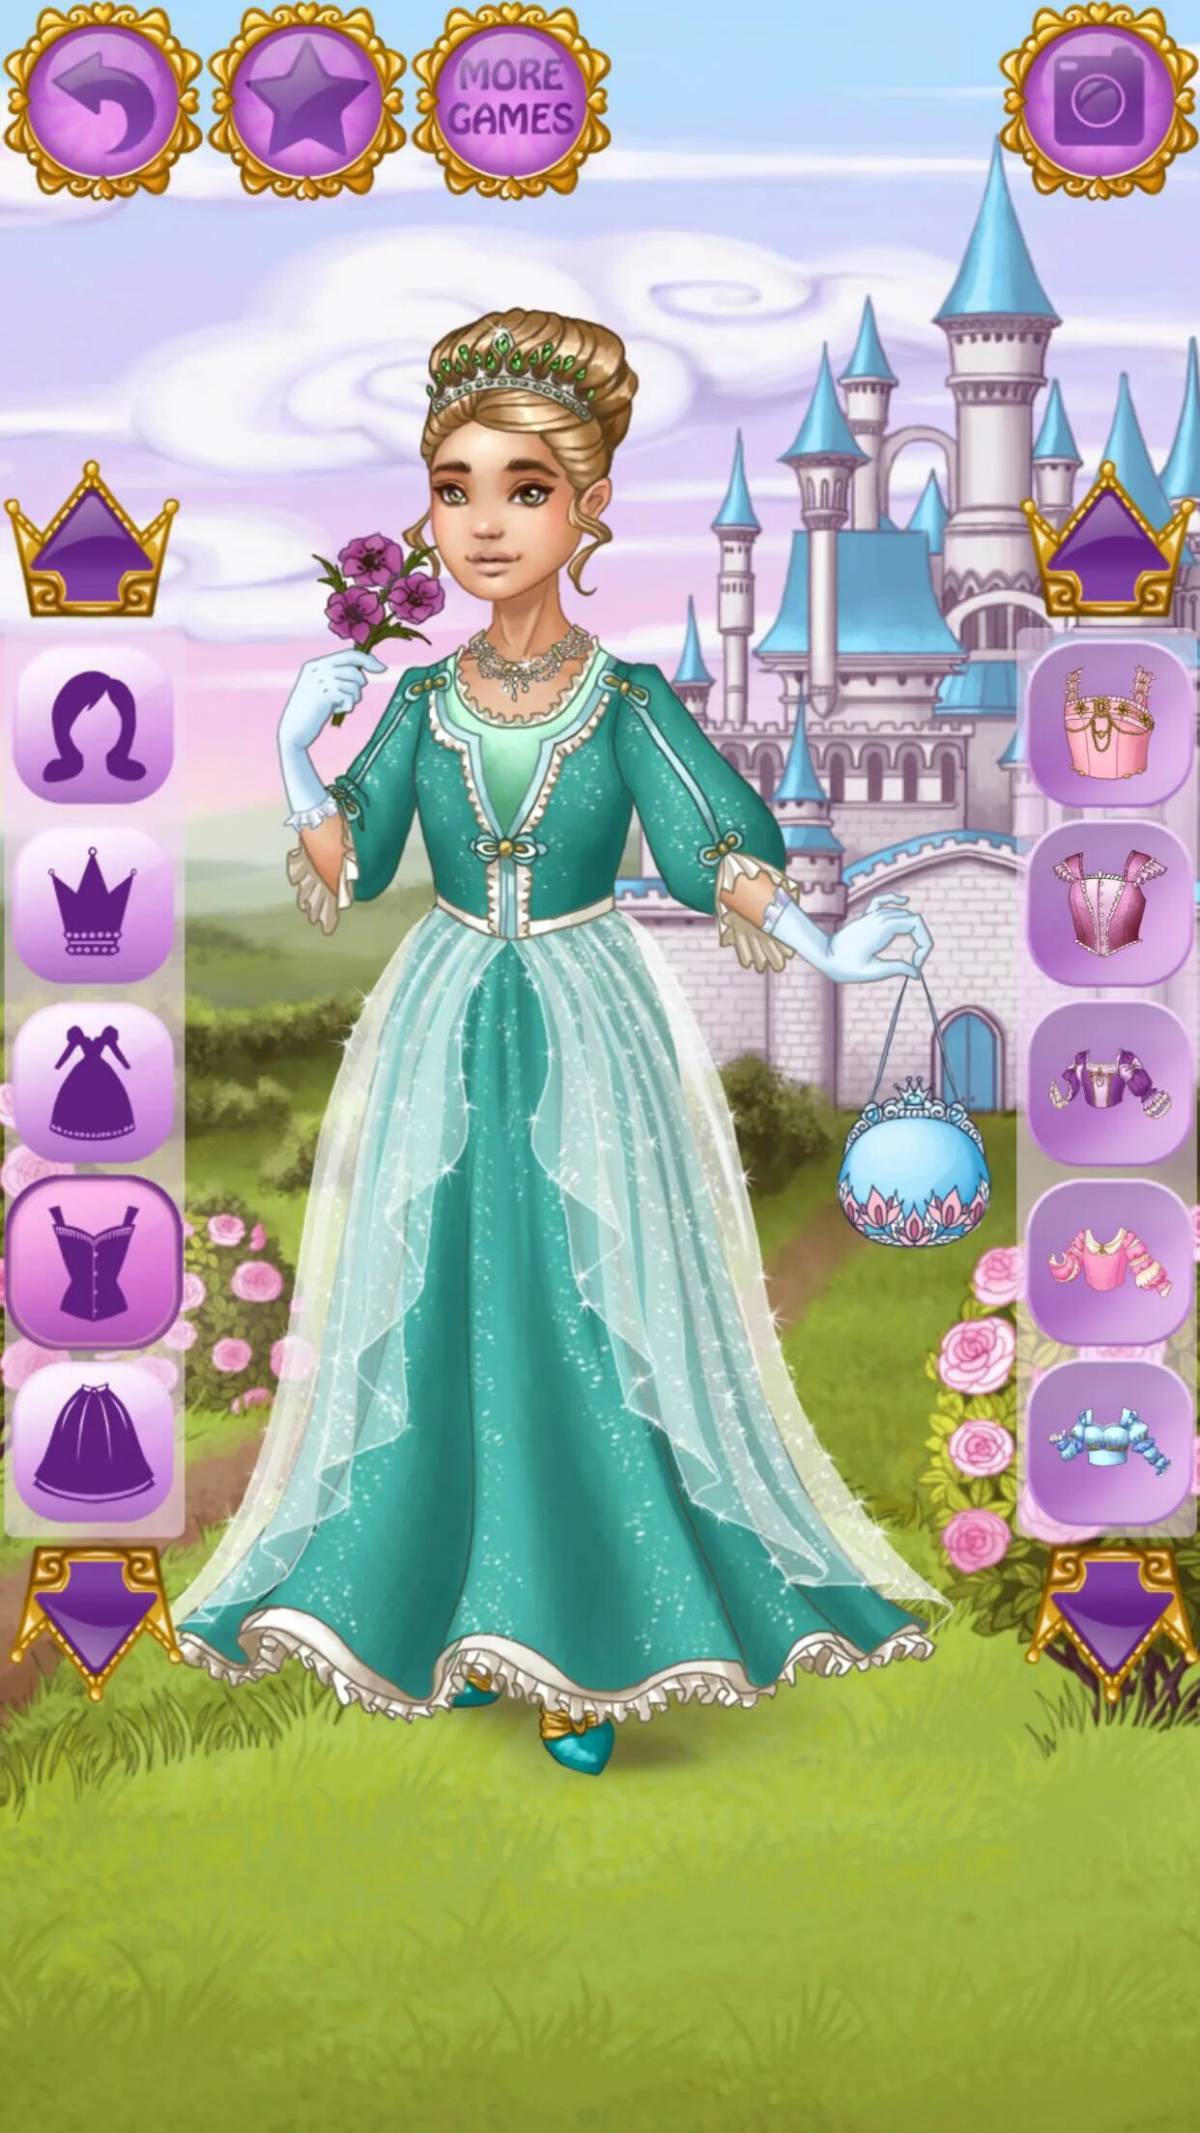 Найди игру принцесс. Игра принцессы королевство для Золушки. Time Princess игра. Одевалки для девочек принцессы. Принцесса Казуальные игры.